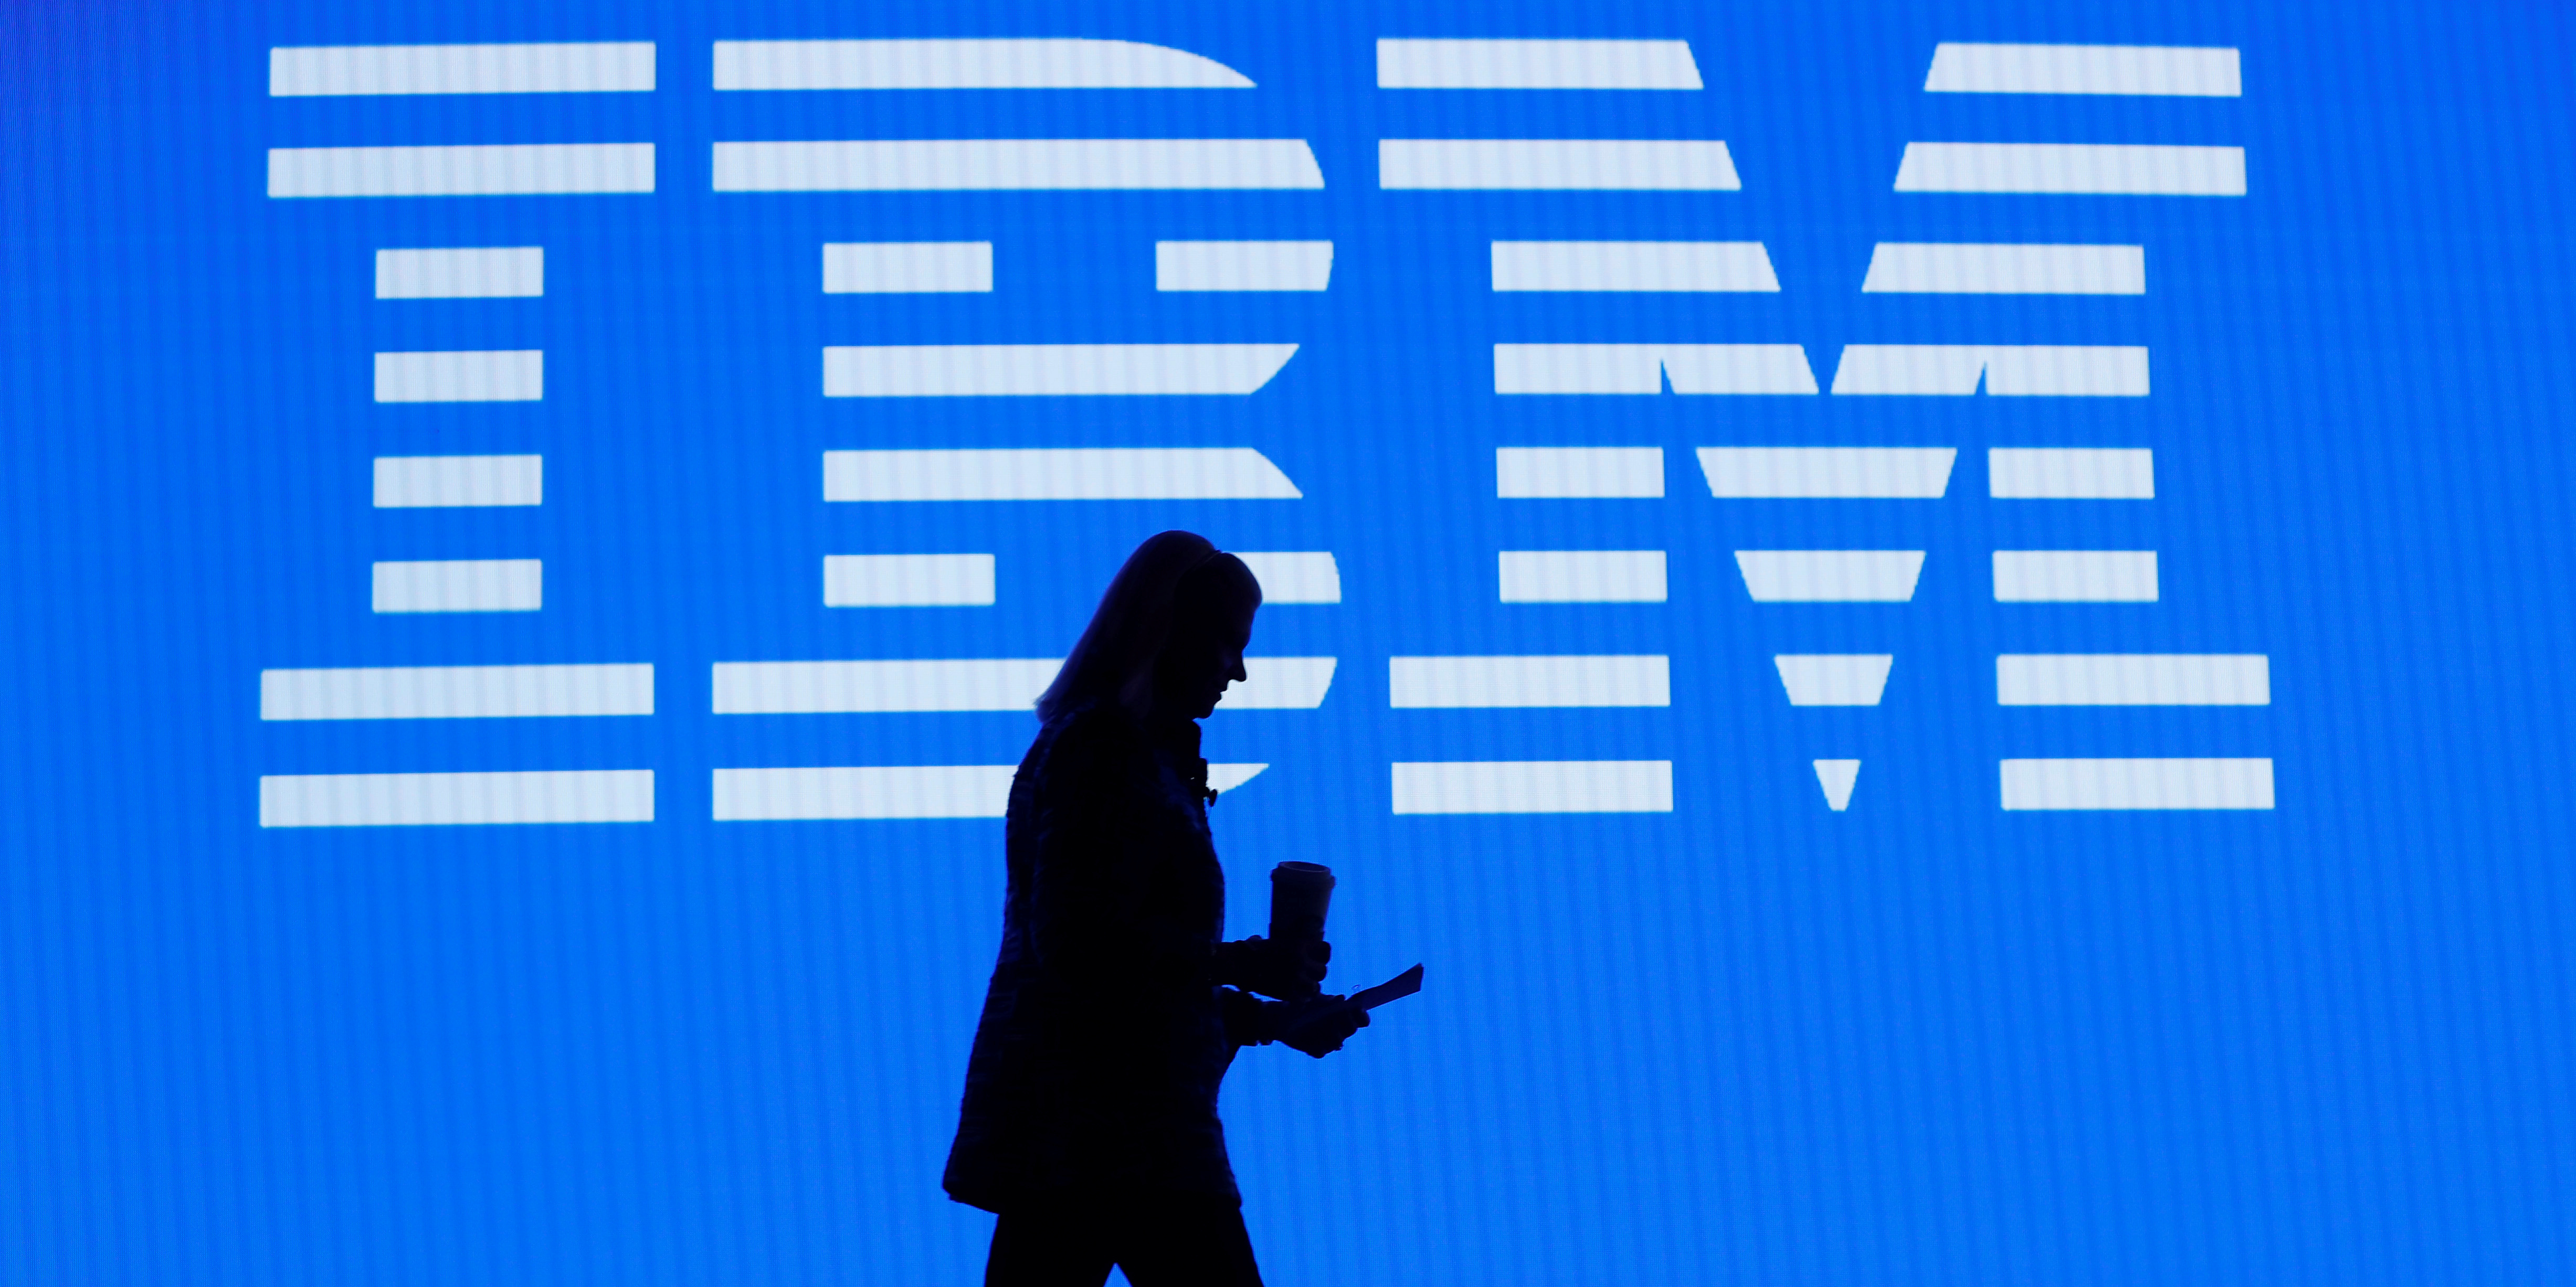 IBM annonce qu'il ne vendra plus d'outils de reconnaissance faciale, sur fond de tensions raciales aux États-Unis